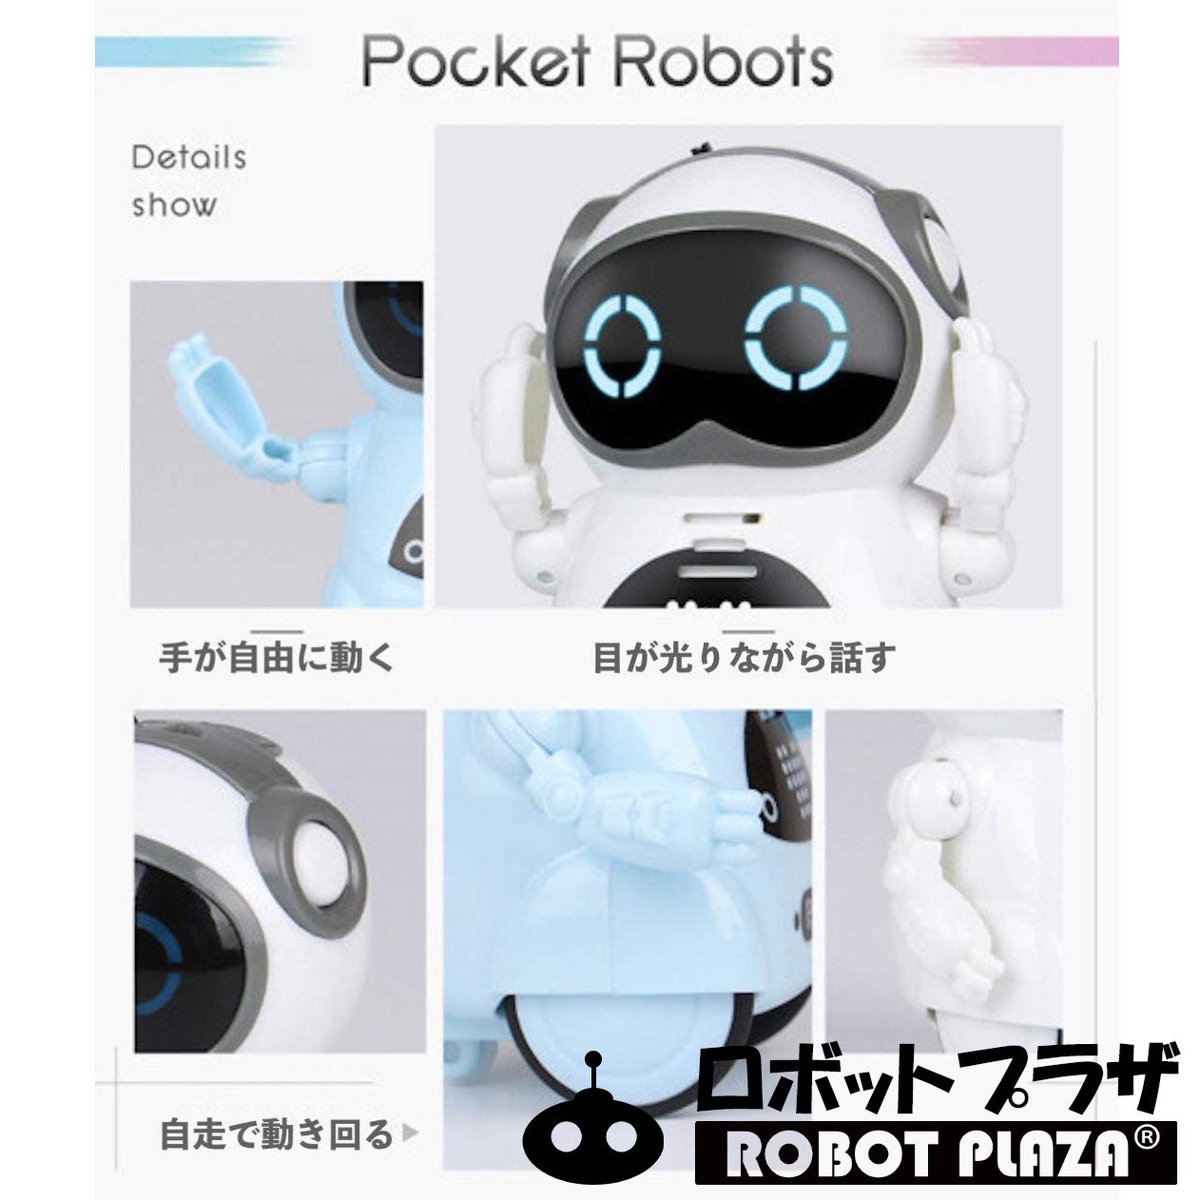 ポケットロボットの諸機能